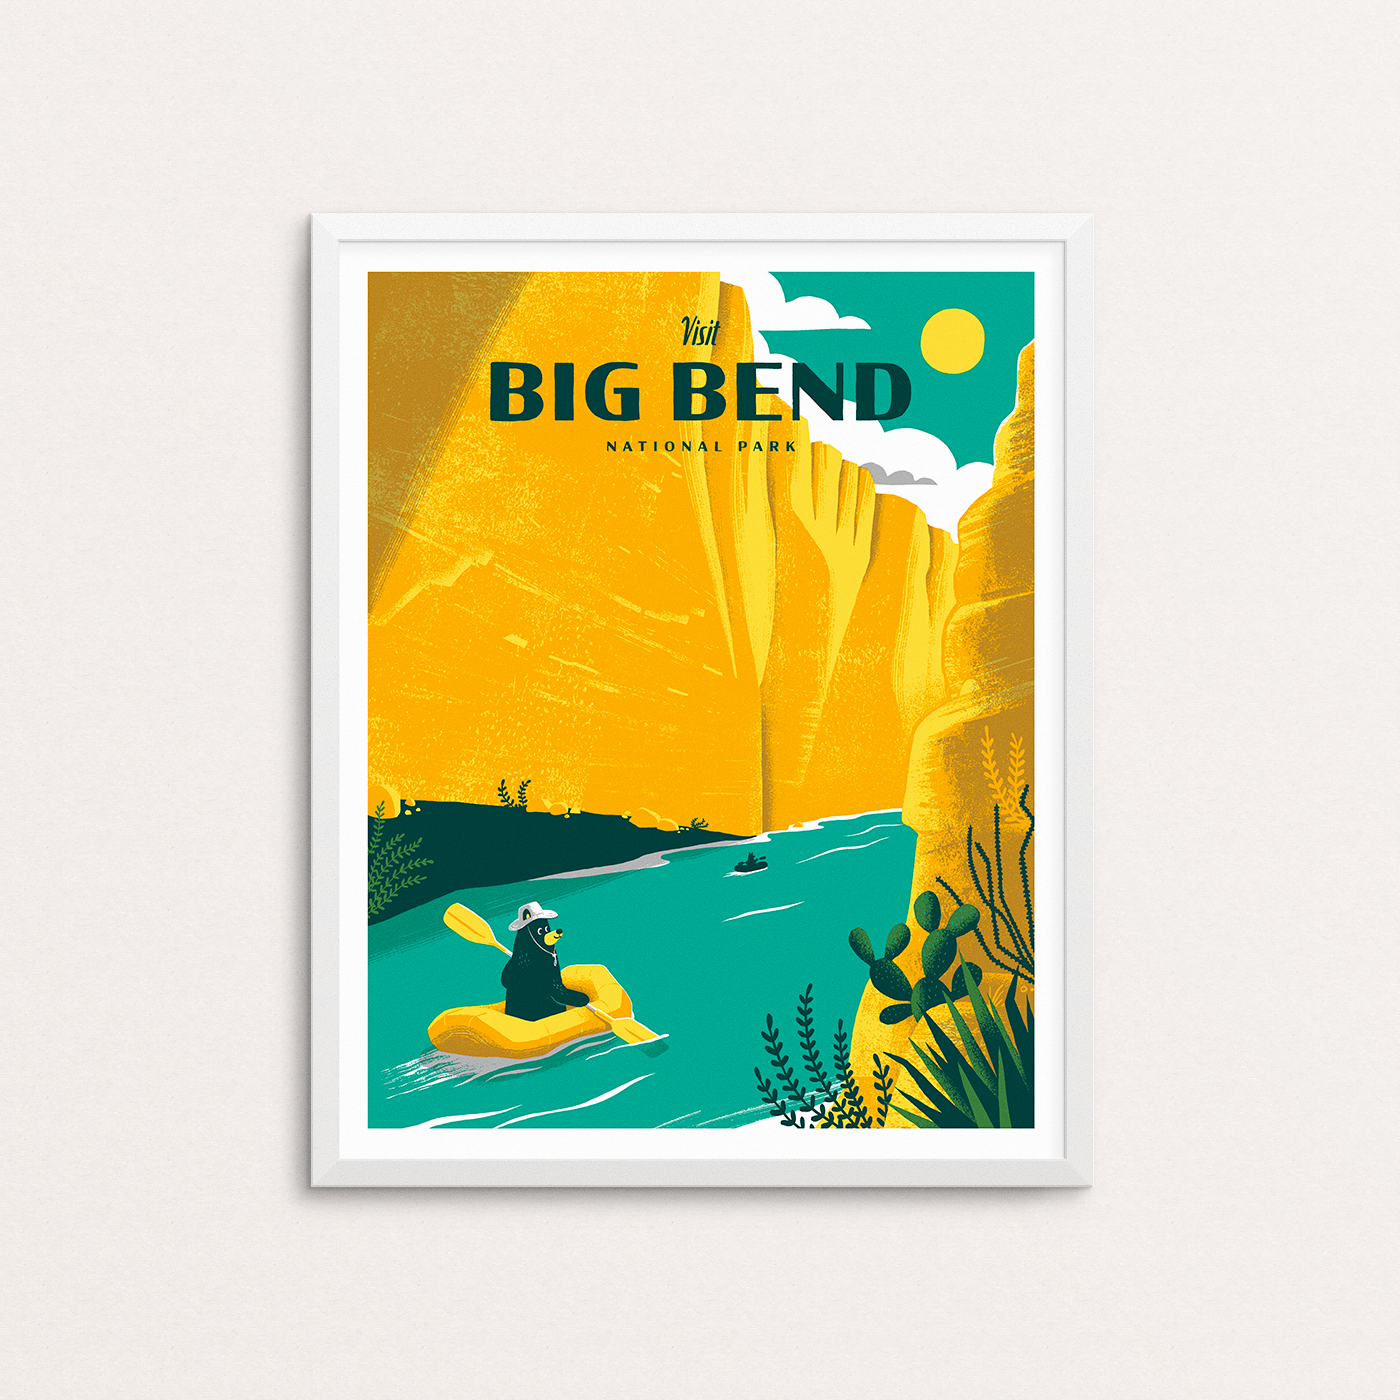 Big Bend National Park Poster